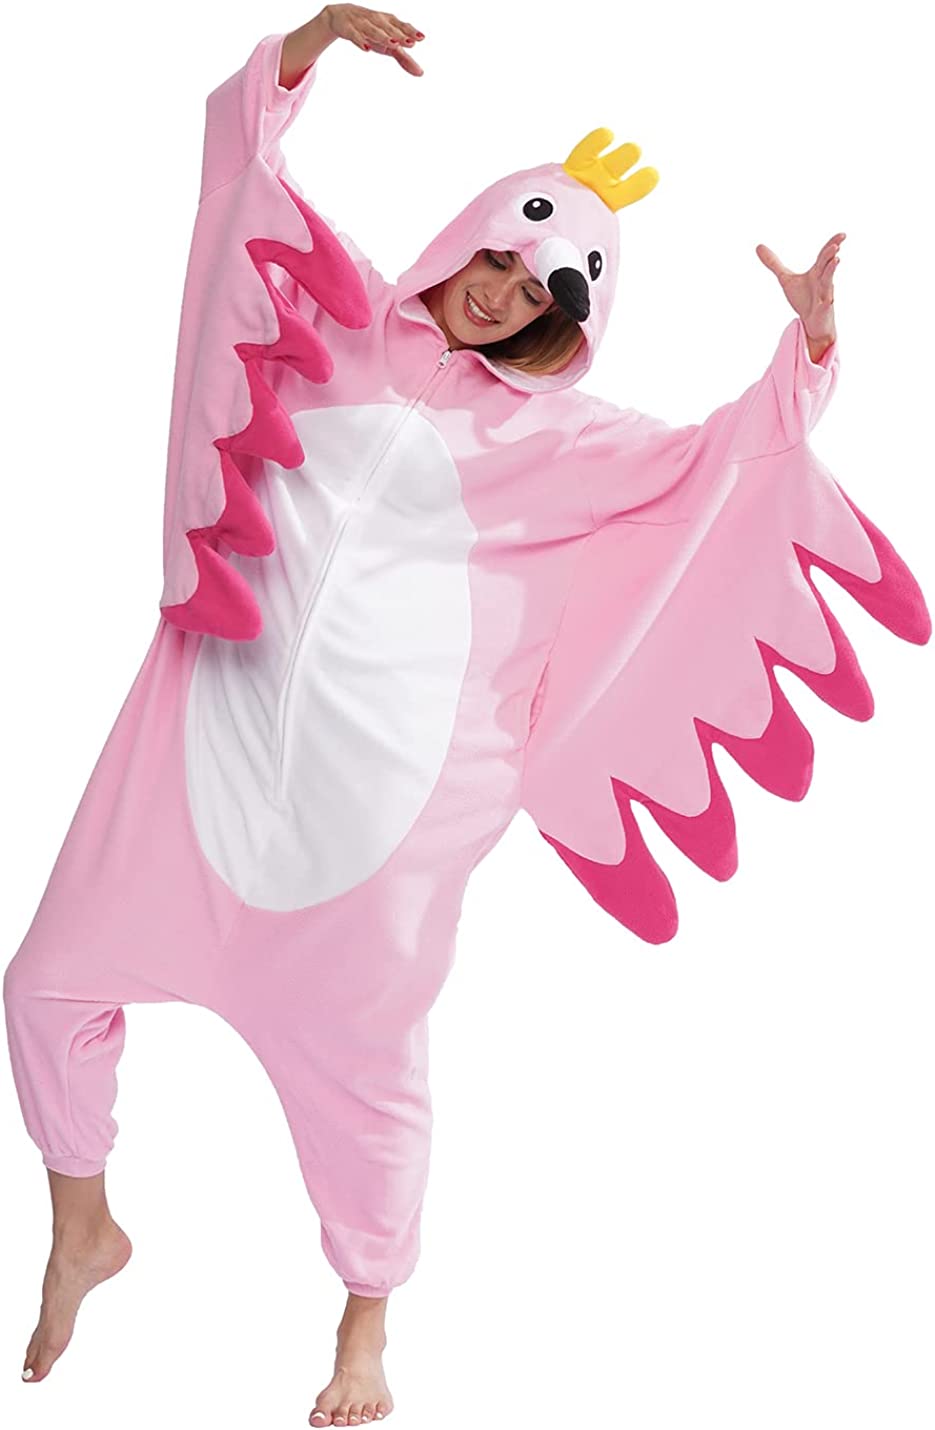 Bird Onesie Pajamas Animal Cosplay Costume Sleepwear